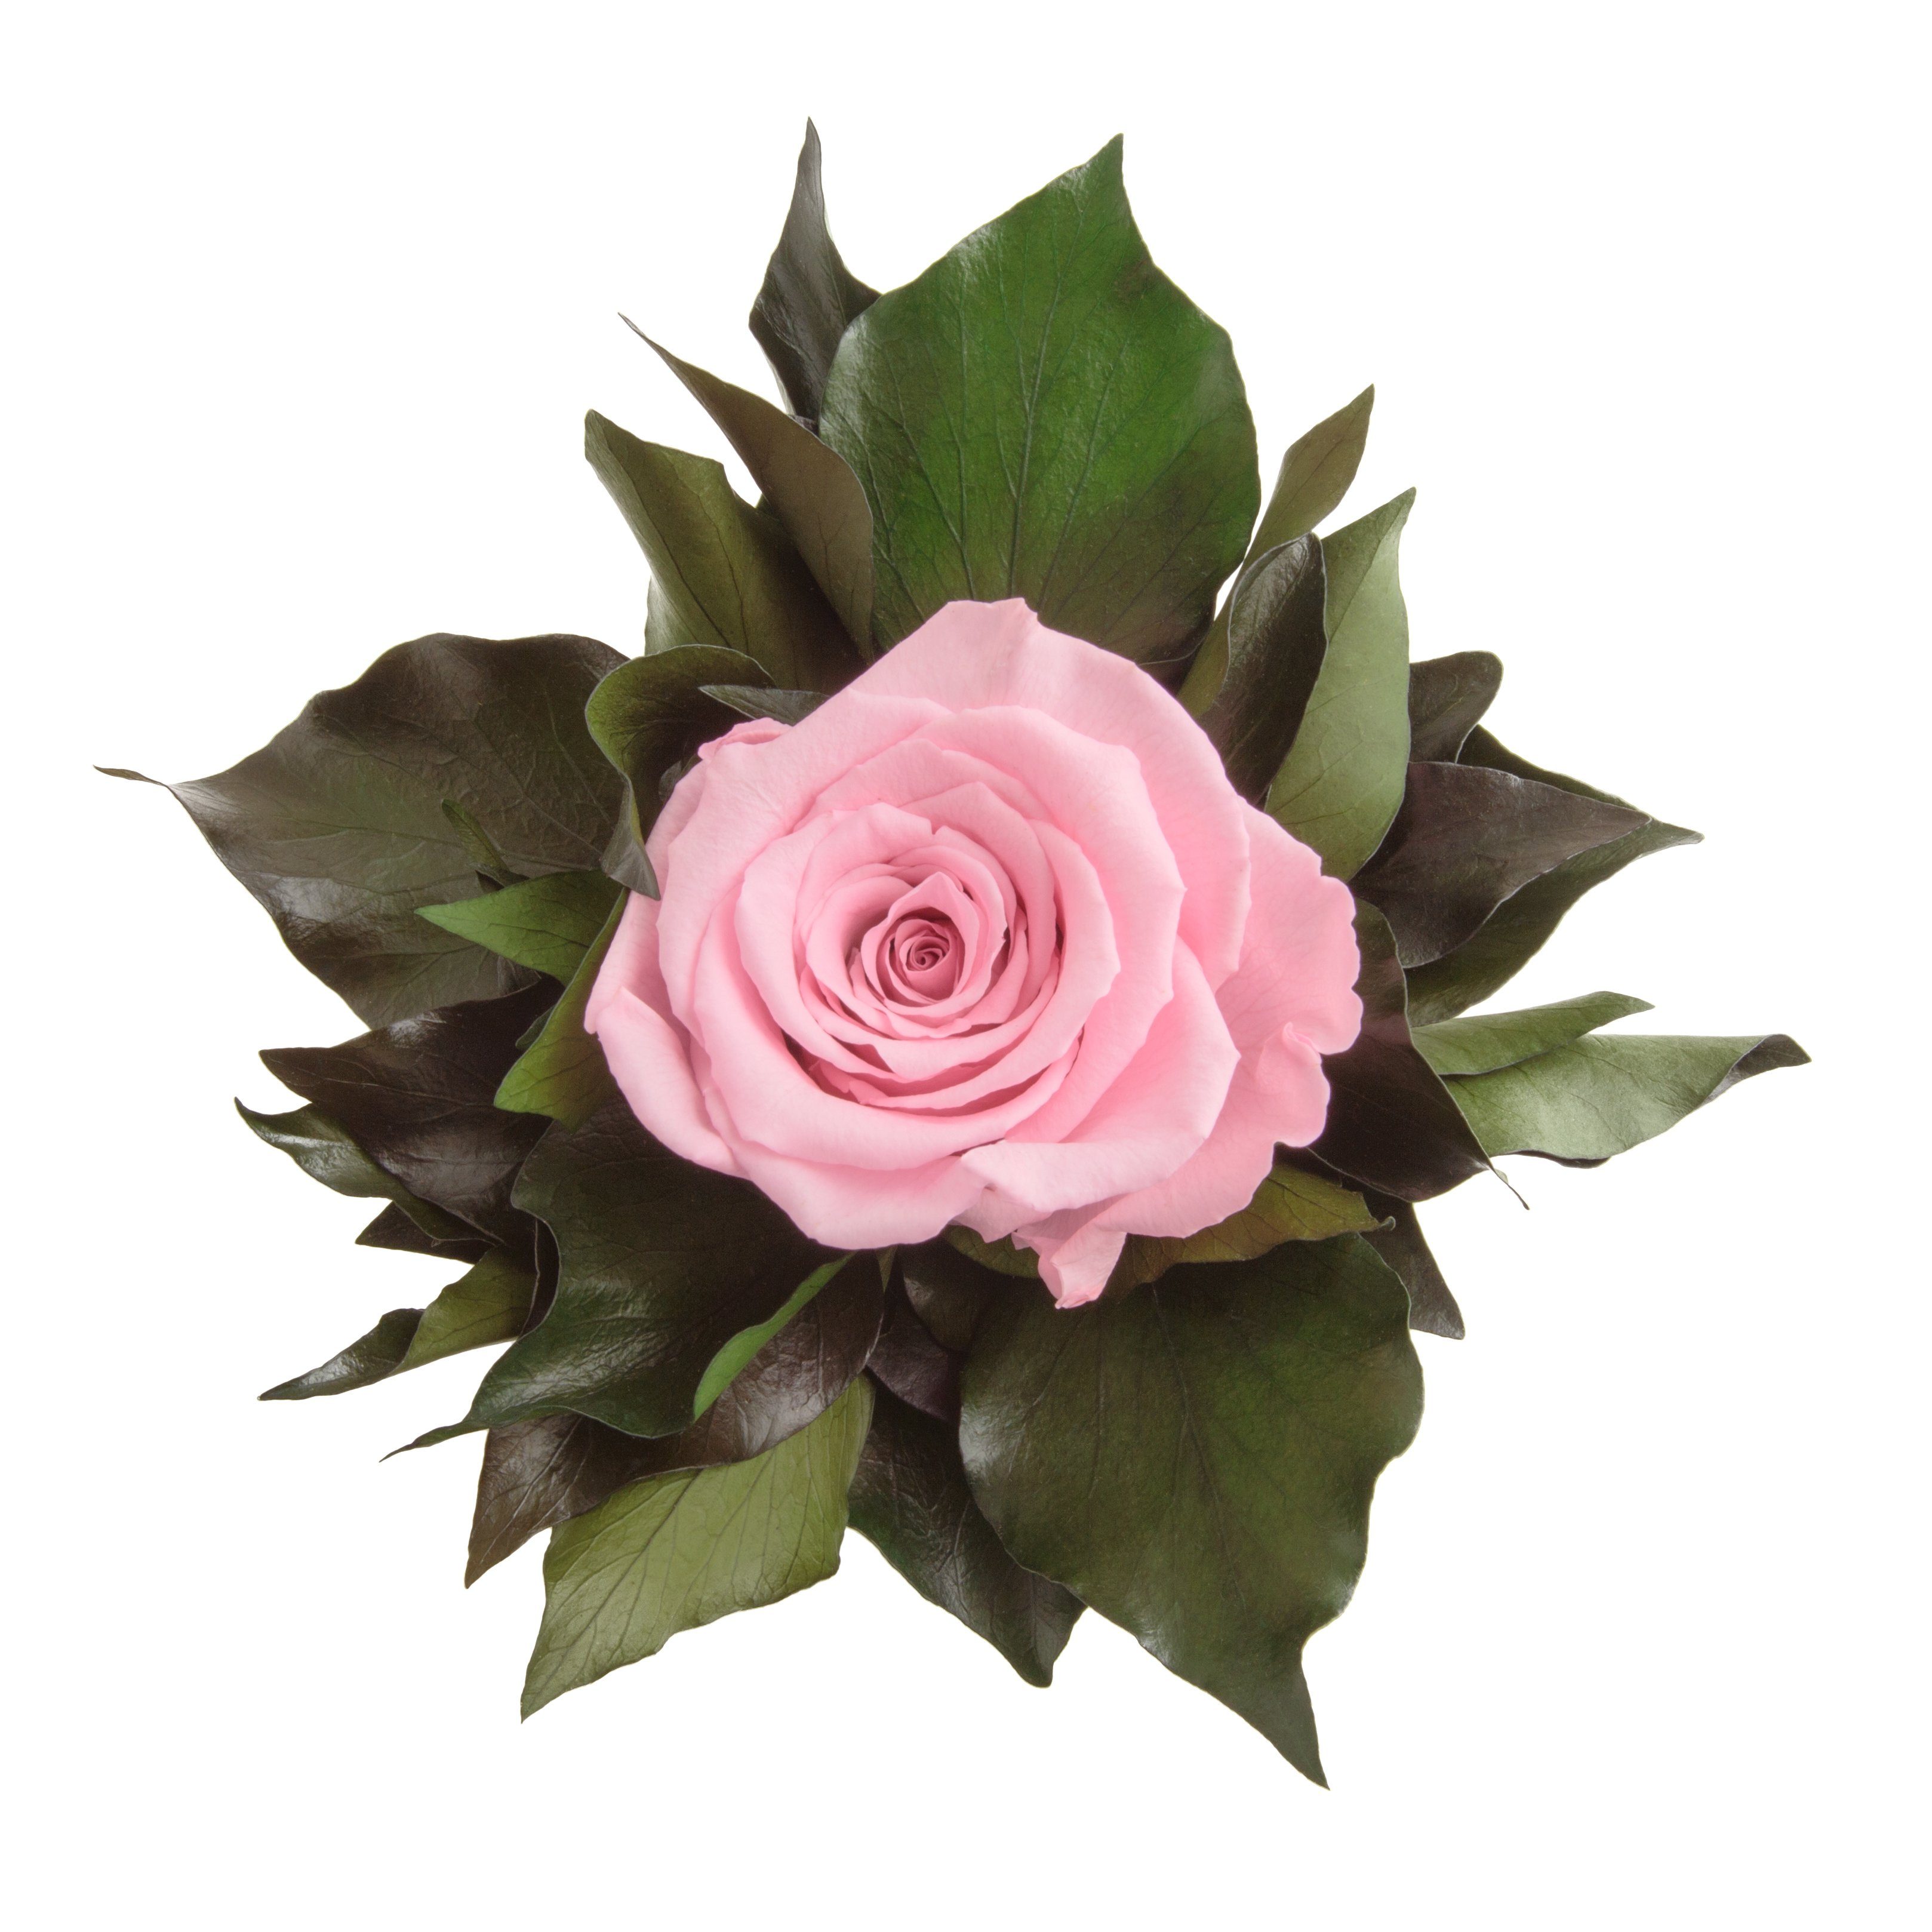 Echte haltbar Blume 12 Frauen lange SCHULZ Rose ROSEMARIE für Zimmerpflanze Rose, 1 Infinity Rosa Höhe Künstliche Heidelberg, Geschenkidee cm, silberfarben Becher